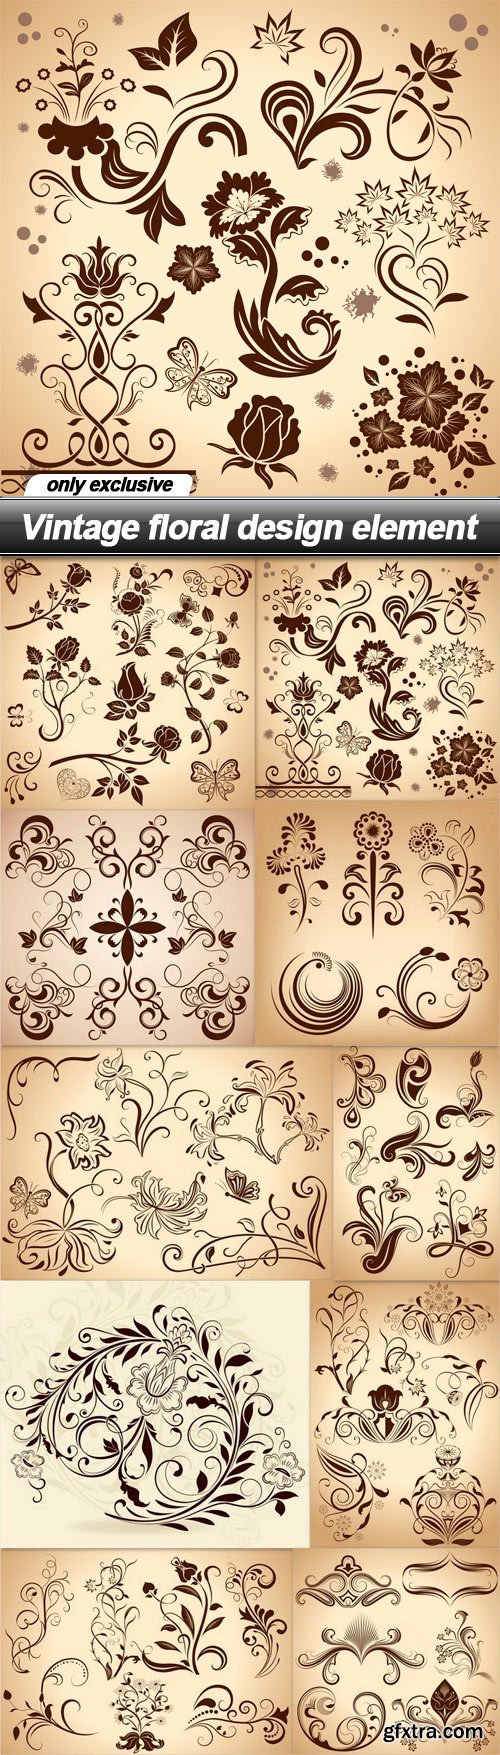 Vintage floral design element - 10 EPS